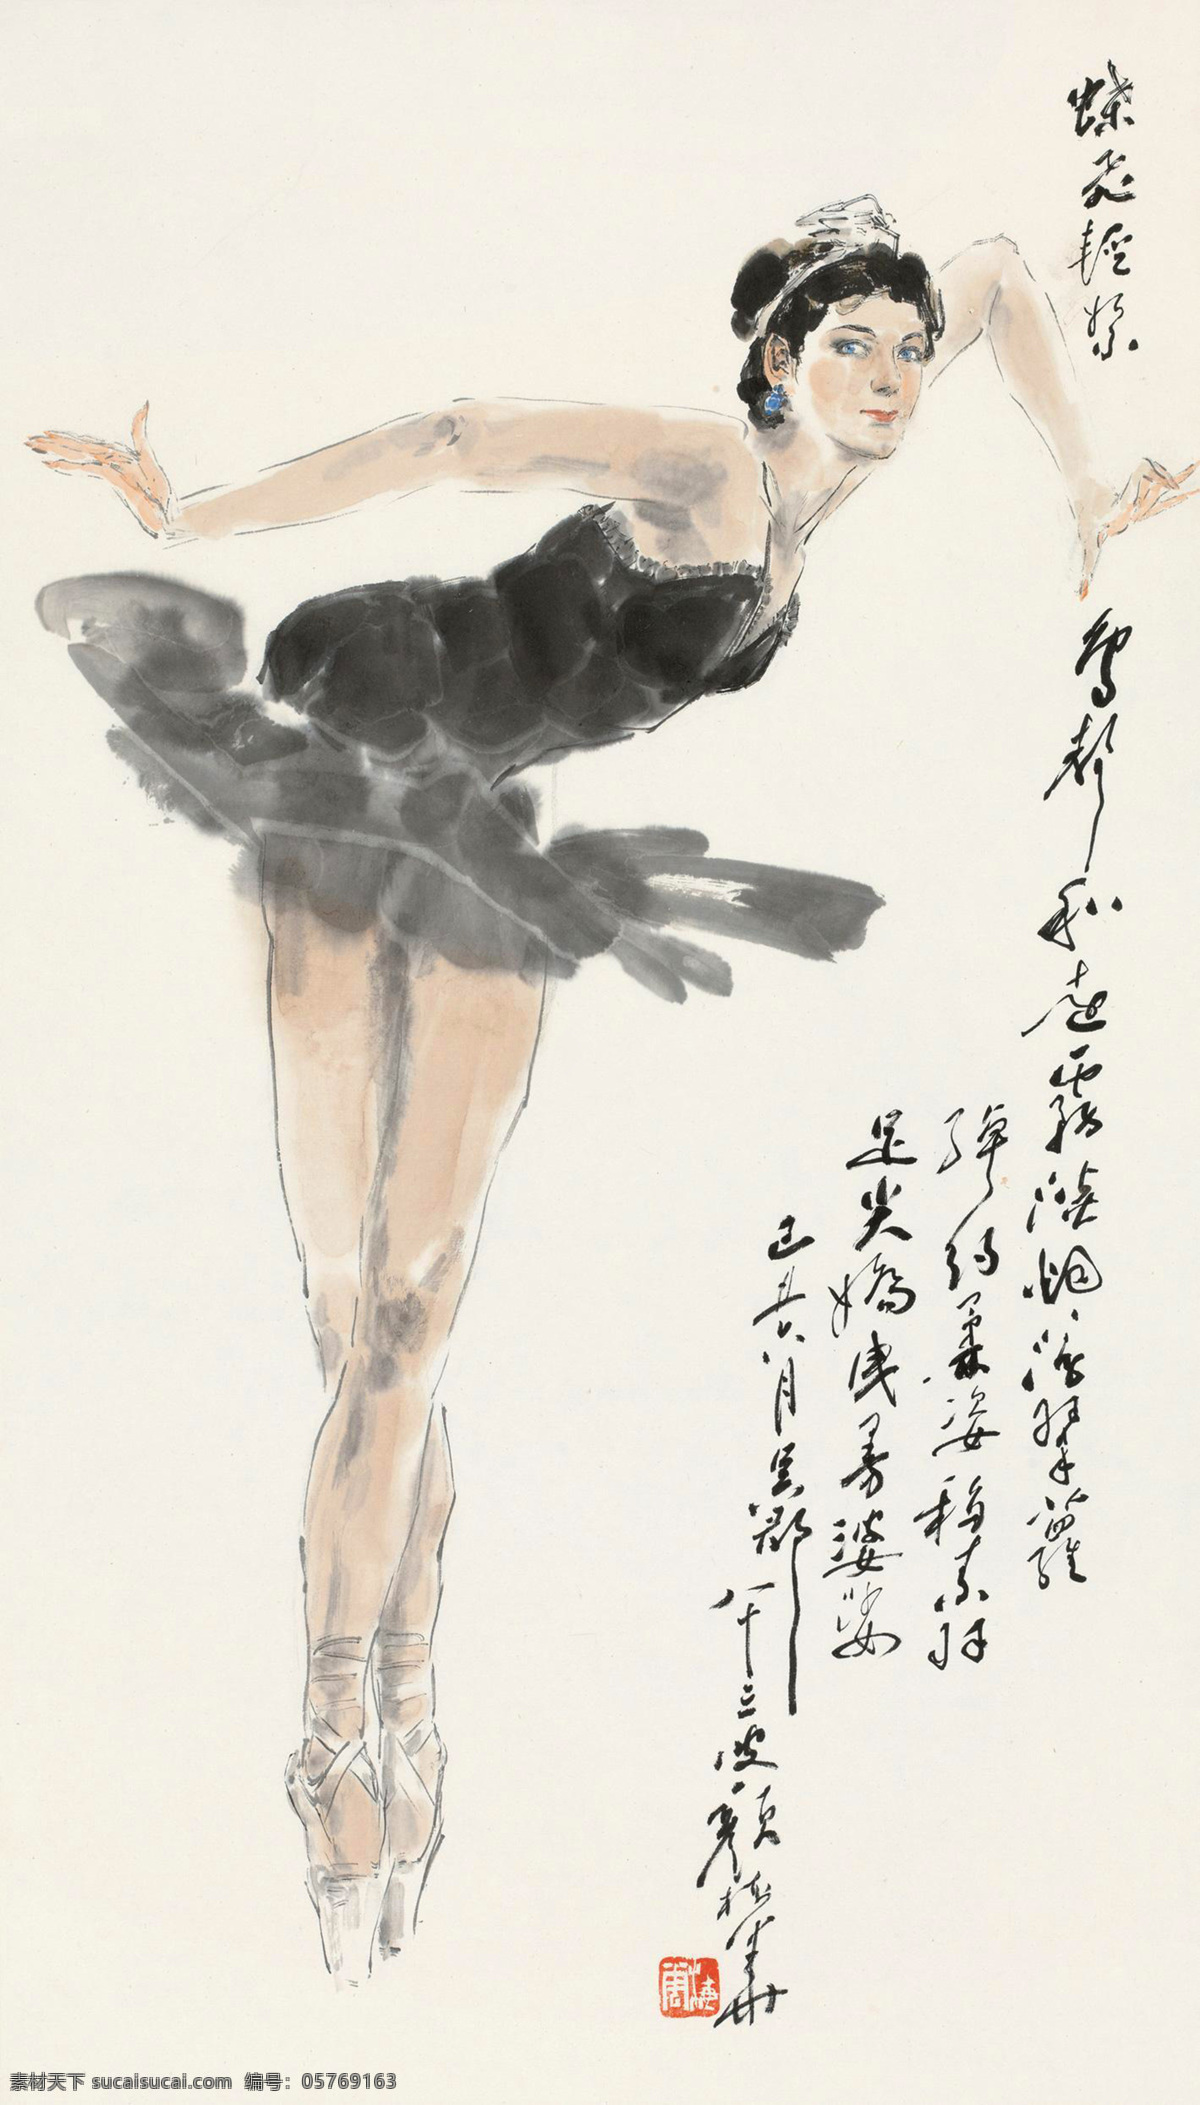 芭蕾 国画 绘画书法 人物画 文化艺术 舞蹈 写意 芭蕾设计素材 芭蕾模板下载 颜梅华 中国画